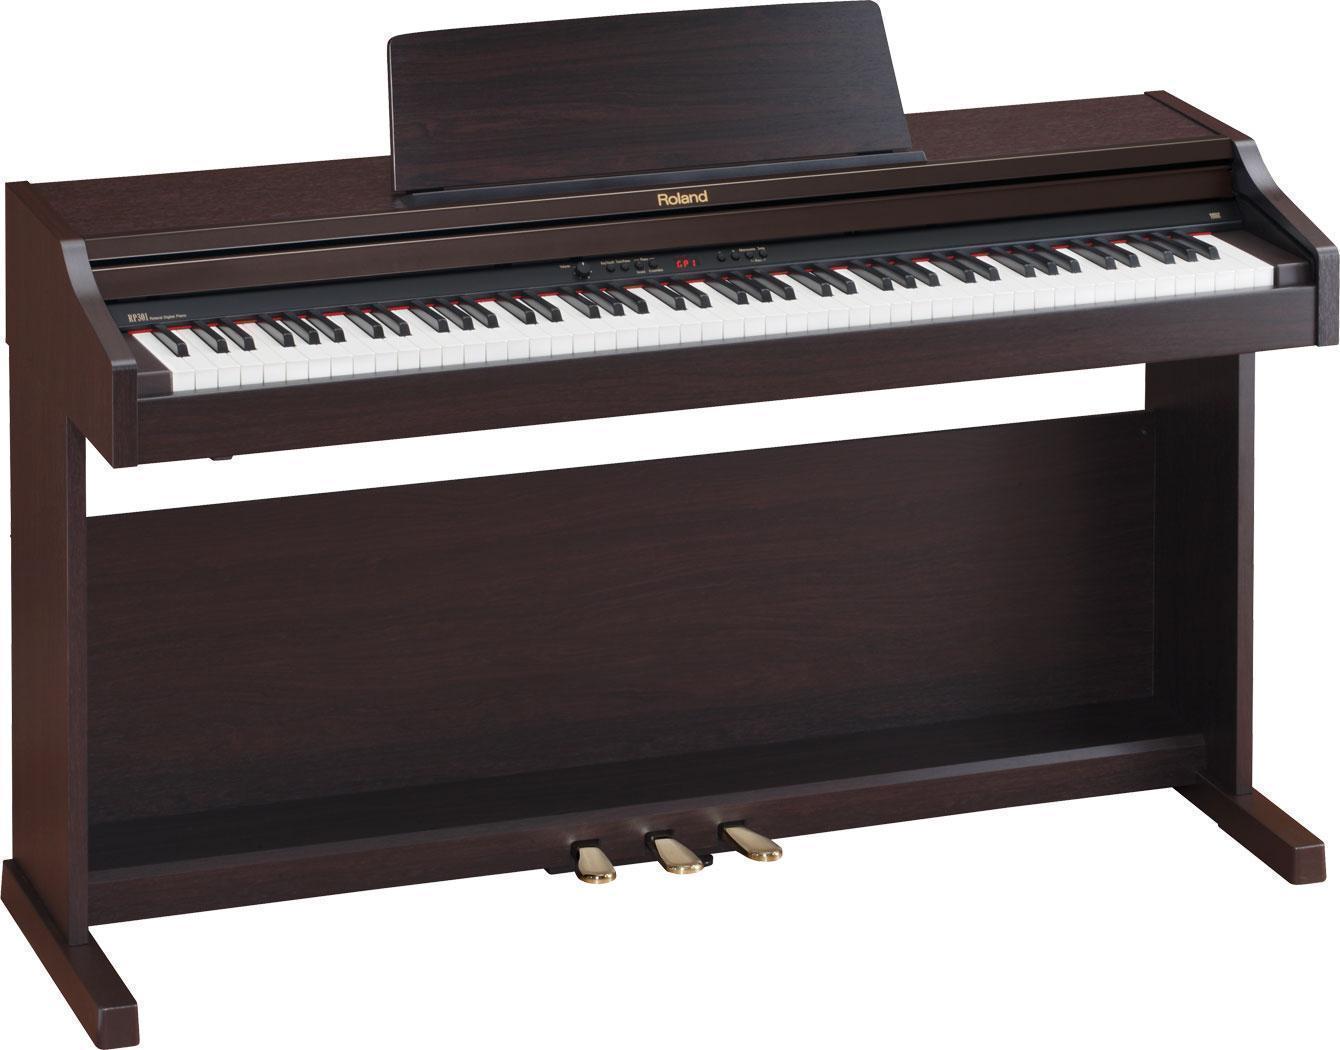 đàn piano điện Roland RP-301 R